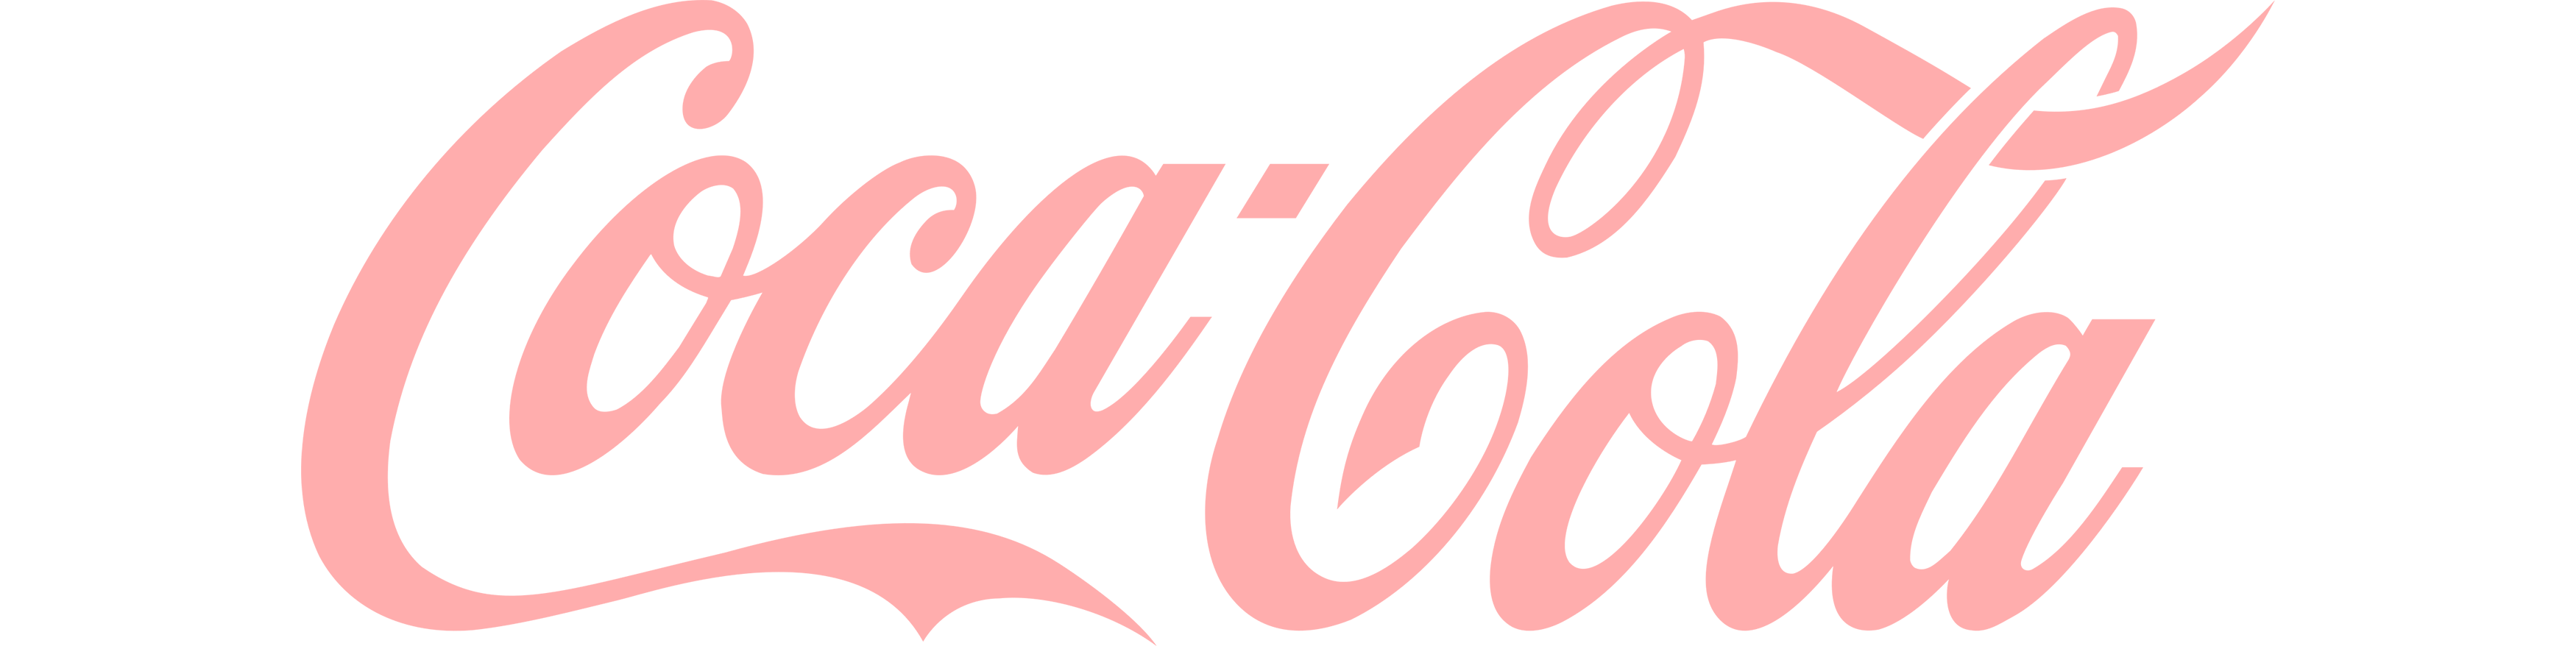 1-Coca-cola.png